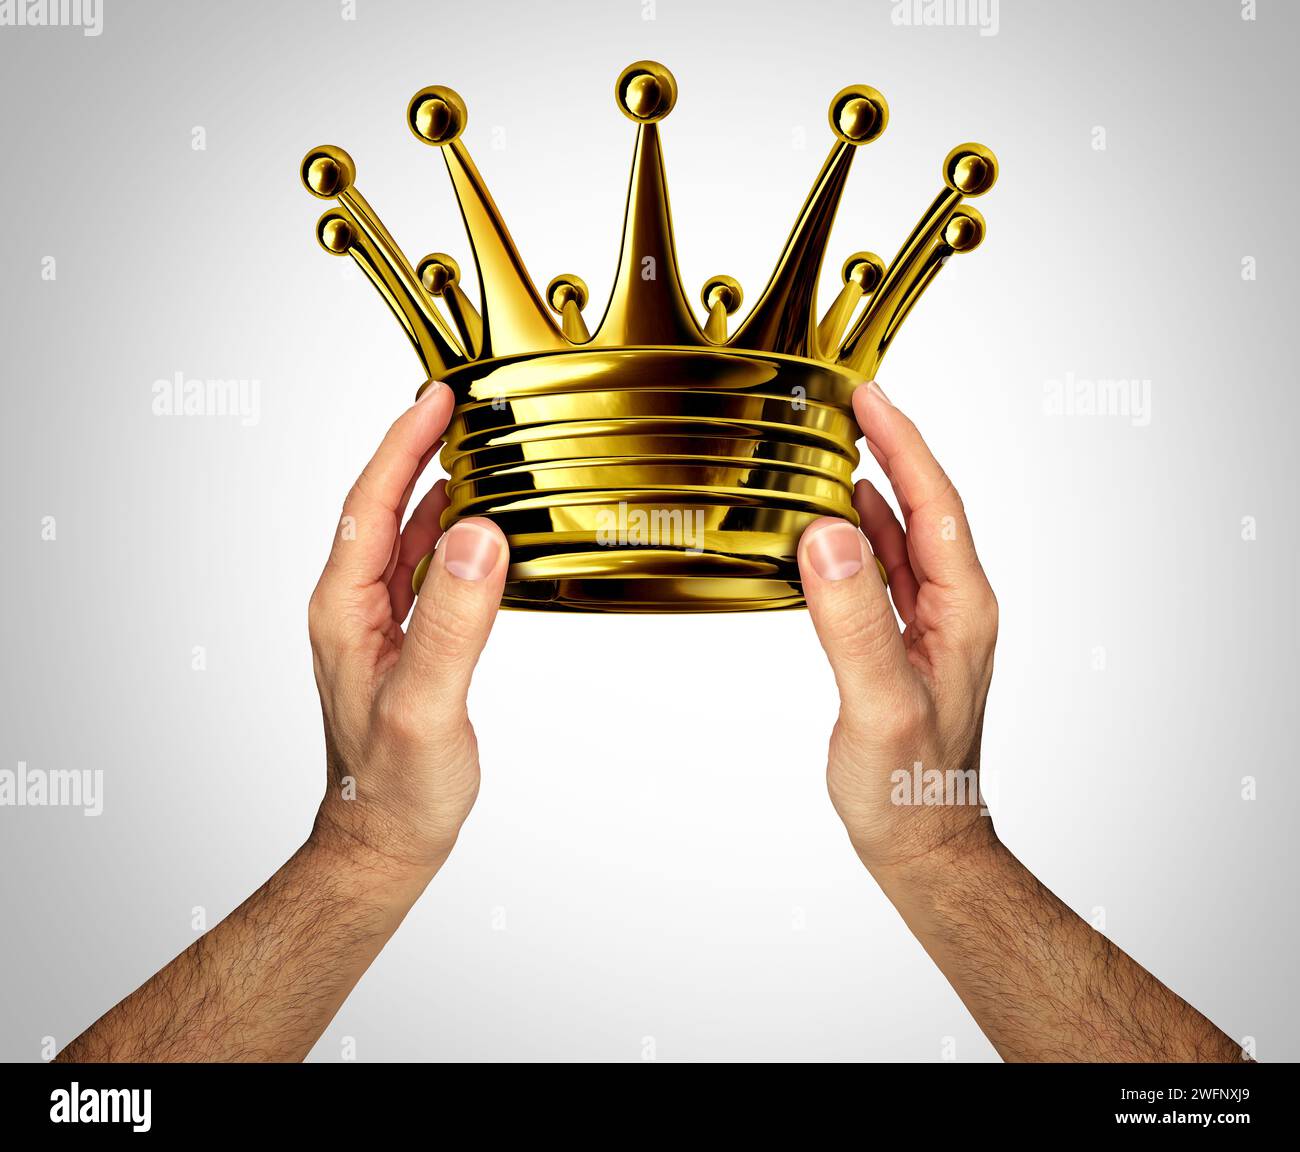 Krönung der Krönungskrone als Person, die ein goldenes oder goldenes Kopfstück als Ehre für Könige und Reichtum als Monarchenpreis verleiht oder vergibt Stockfoto